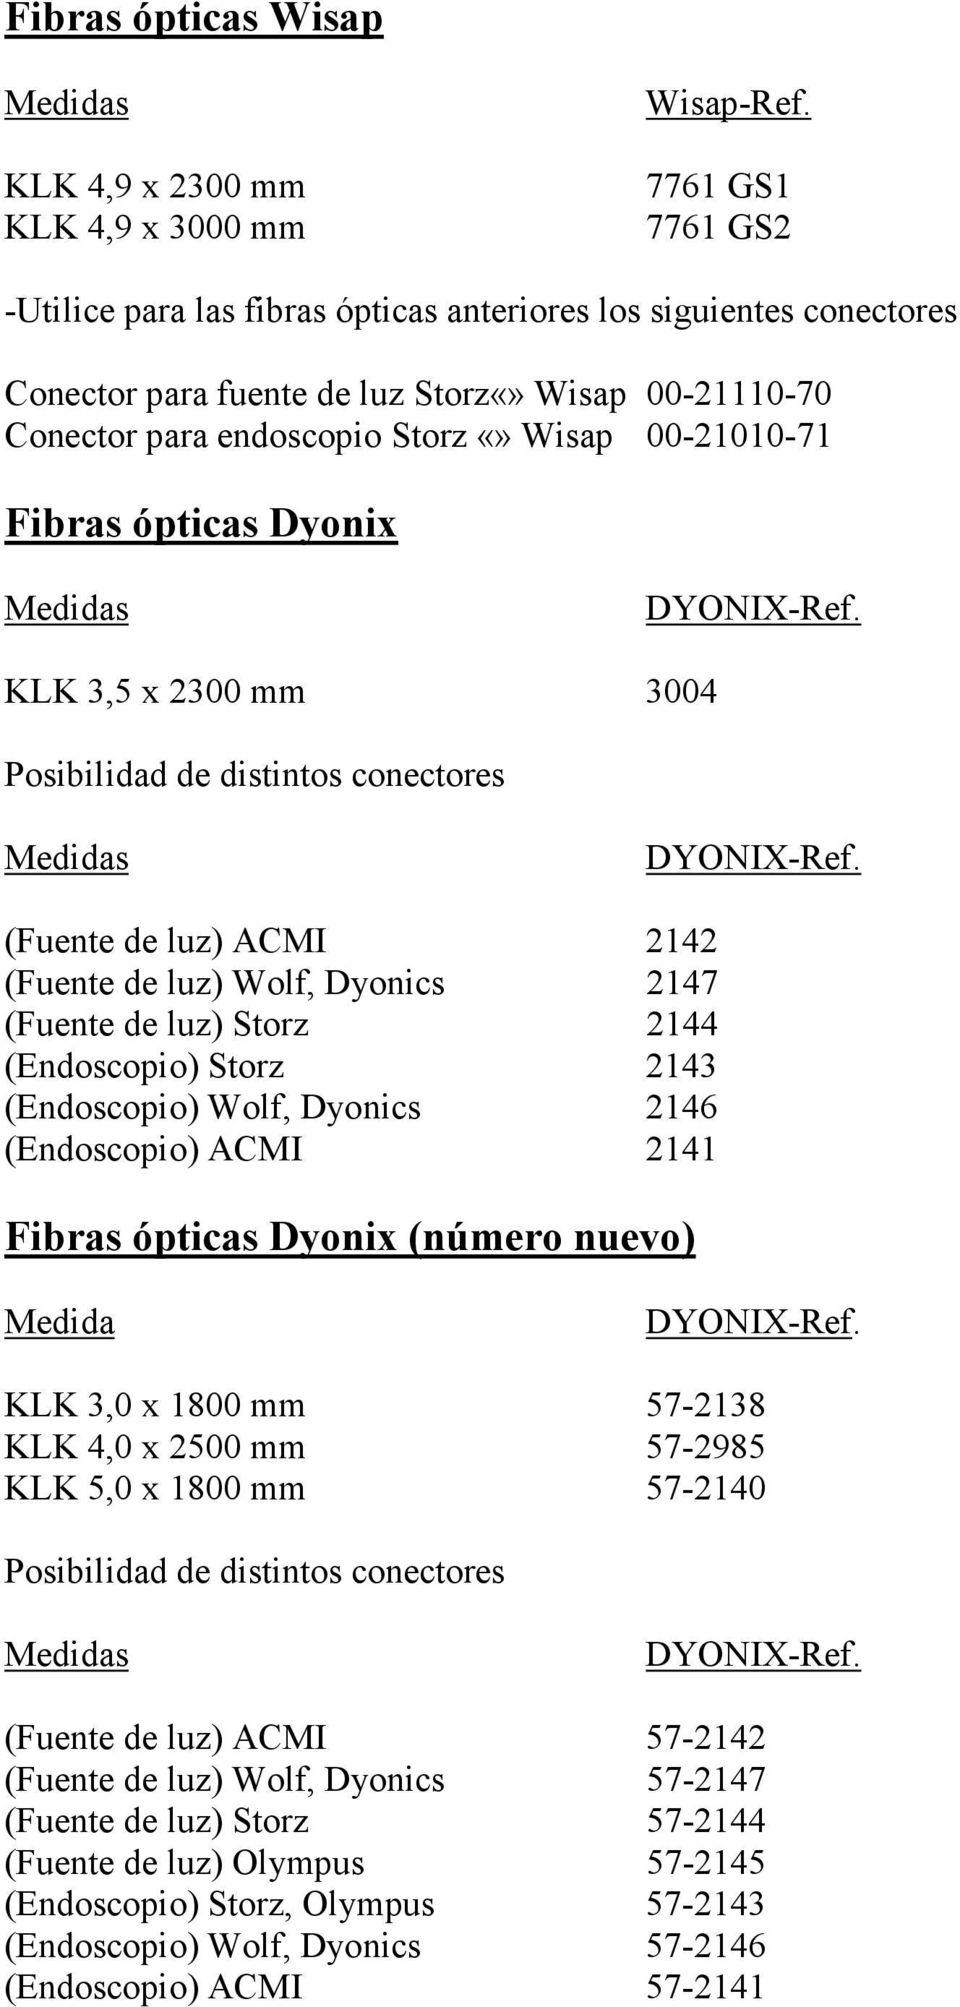 de luz) Wolf, Dyonics 2147 (Fuente de luz) Storz 2144 (Endoscopio) Storz 2143 (Endoscopio) Wolf, Dyonics 2146 (Endoscopio) ACMI 2141 Fibras ópticas Dyonix (número nuevo) Medida KLK